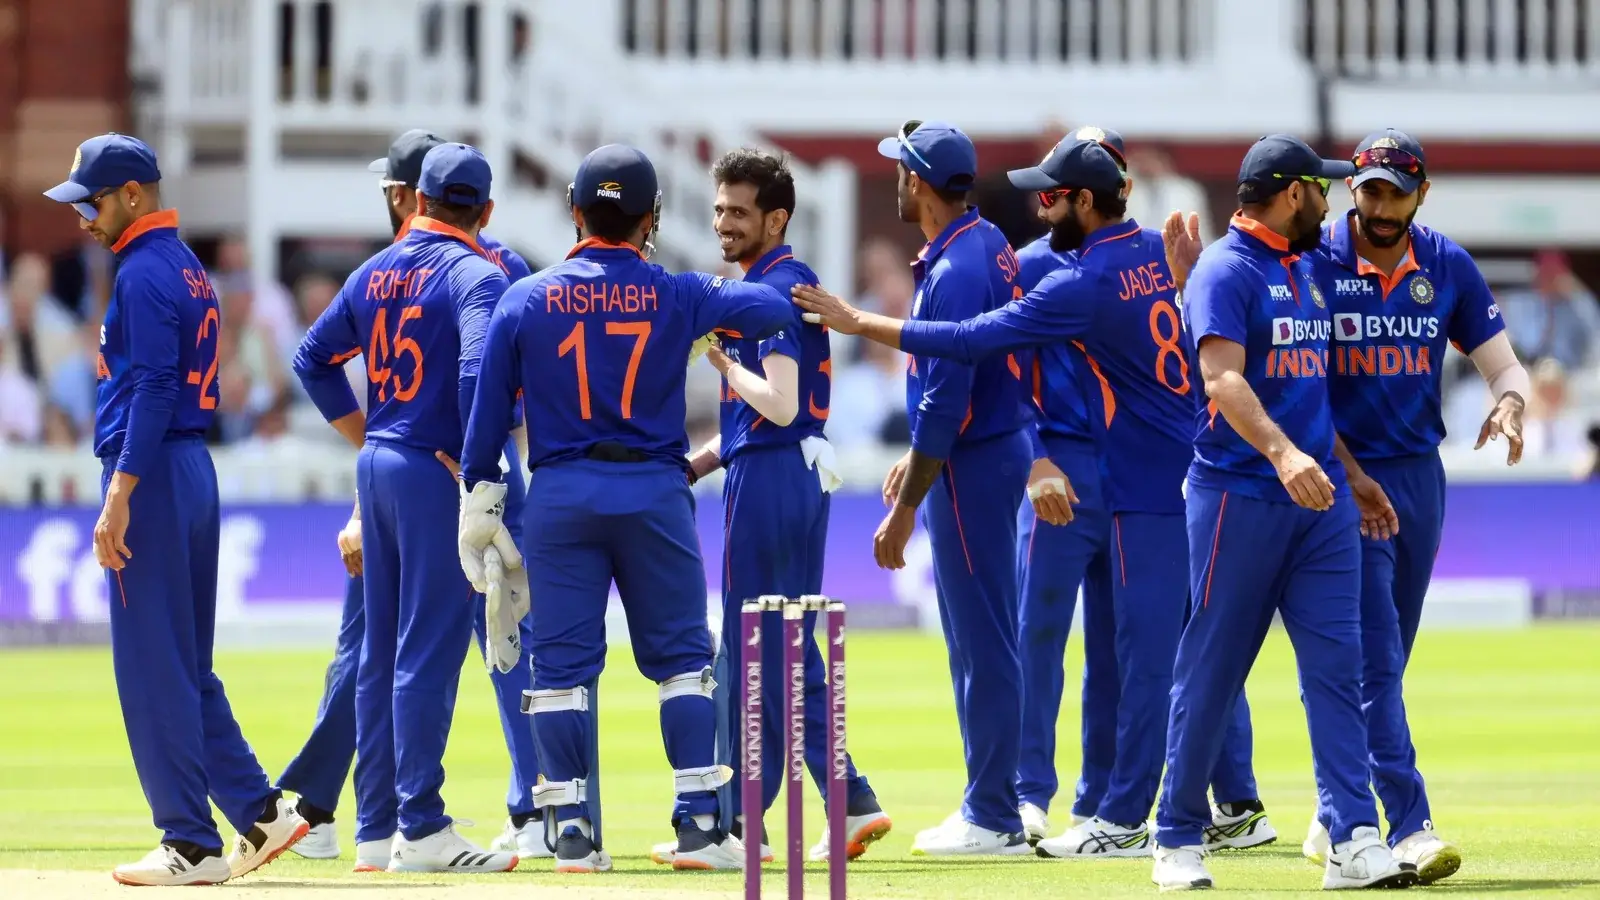  भारत के पूर्व सलामी बल्लेबाज ने विंडीज में सीनियर गेंदबाज को आराम देने के टीम के फैसले पर सवाल उठाए |  क्रिकेट
